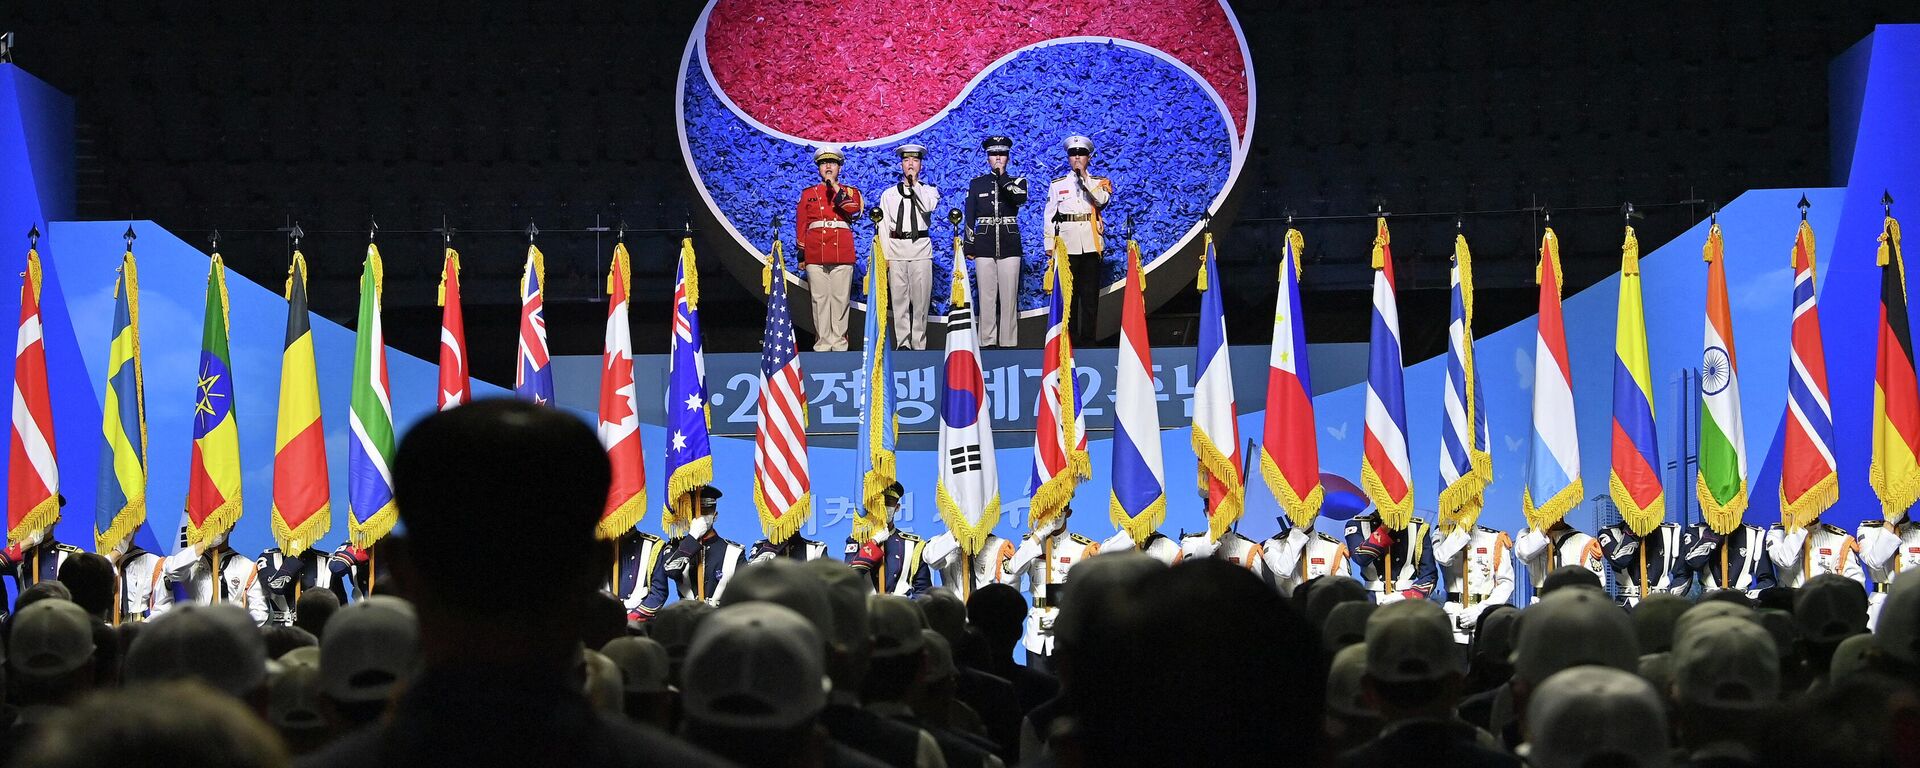 Guardas de honra sul-coreanos seguram bandeiras das nações aliadas da ONU durante uma cerimônia que marca o 72º aniversário do início da Guerra da Coreia de 1950-1953 em Seul em 25 de junho de 2022 - Sputnik Brasil, 1920, 25.06.2022